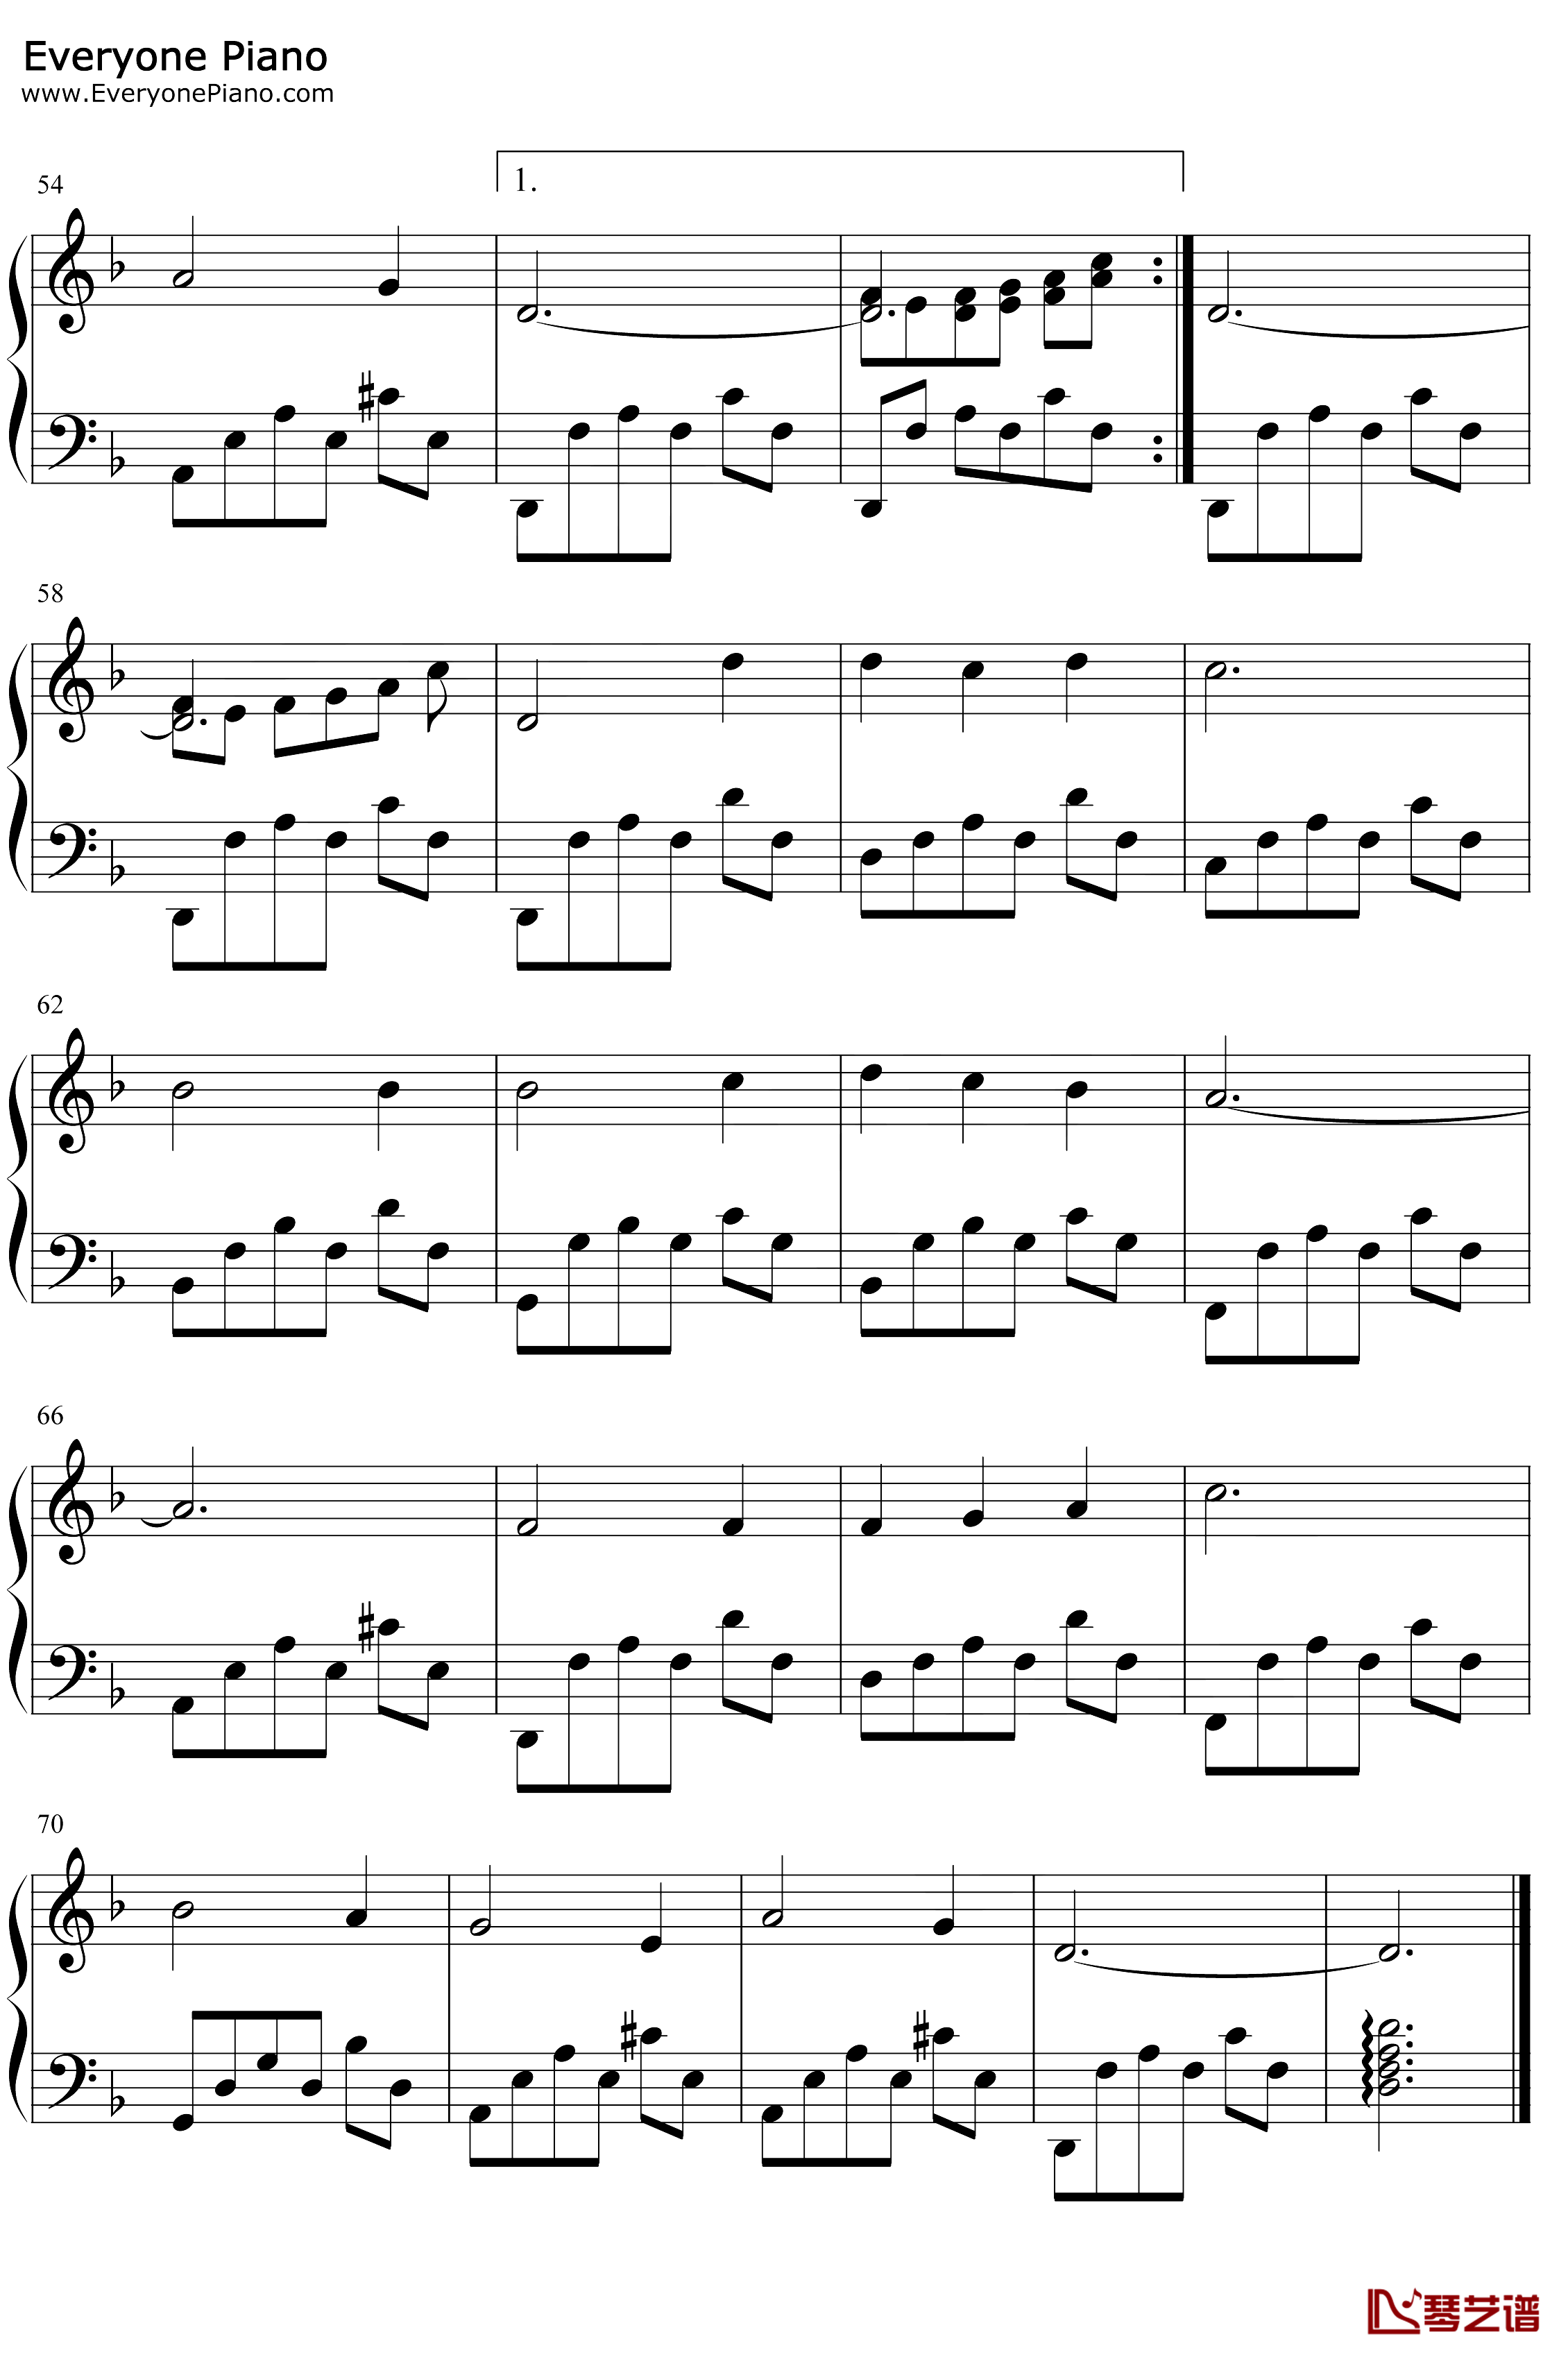 山楂树钢琴谱-叶甫根尼·巴普罗维奇·罗德金-乌拉尔的花楸树-1953年苏联时期爱情歌曲3